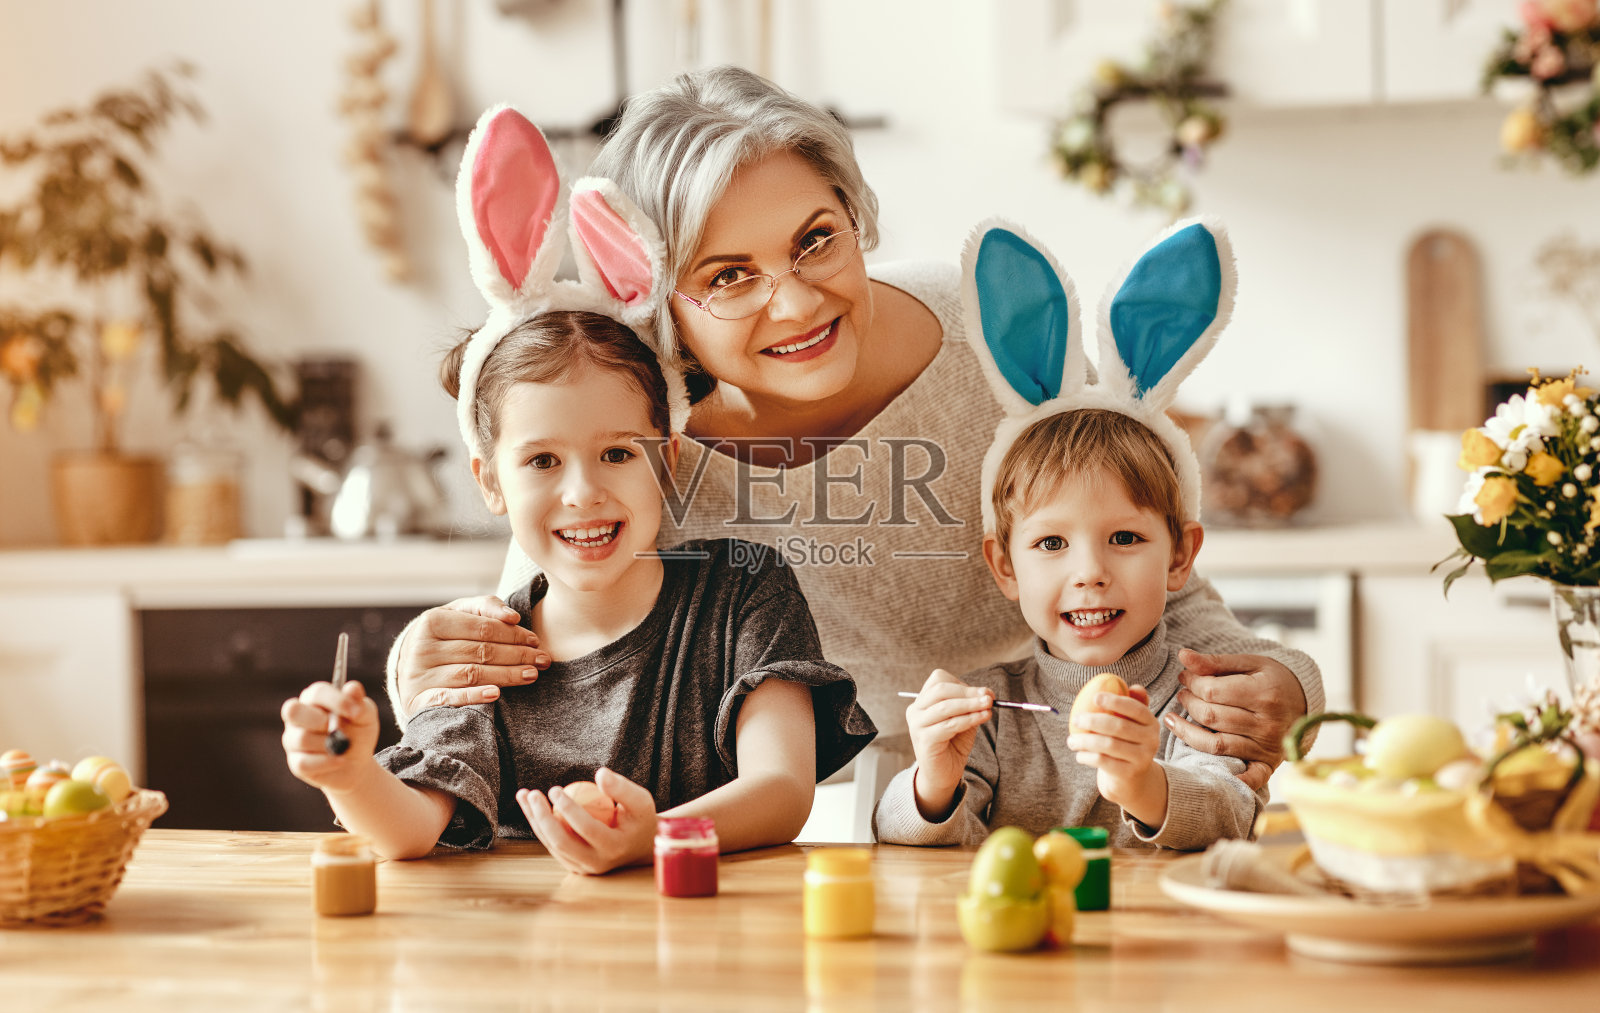 复活节快乐!家人的祖母和孩子们为节日画鸡蛋照片摄影图片